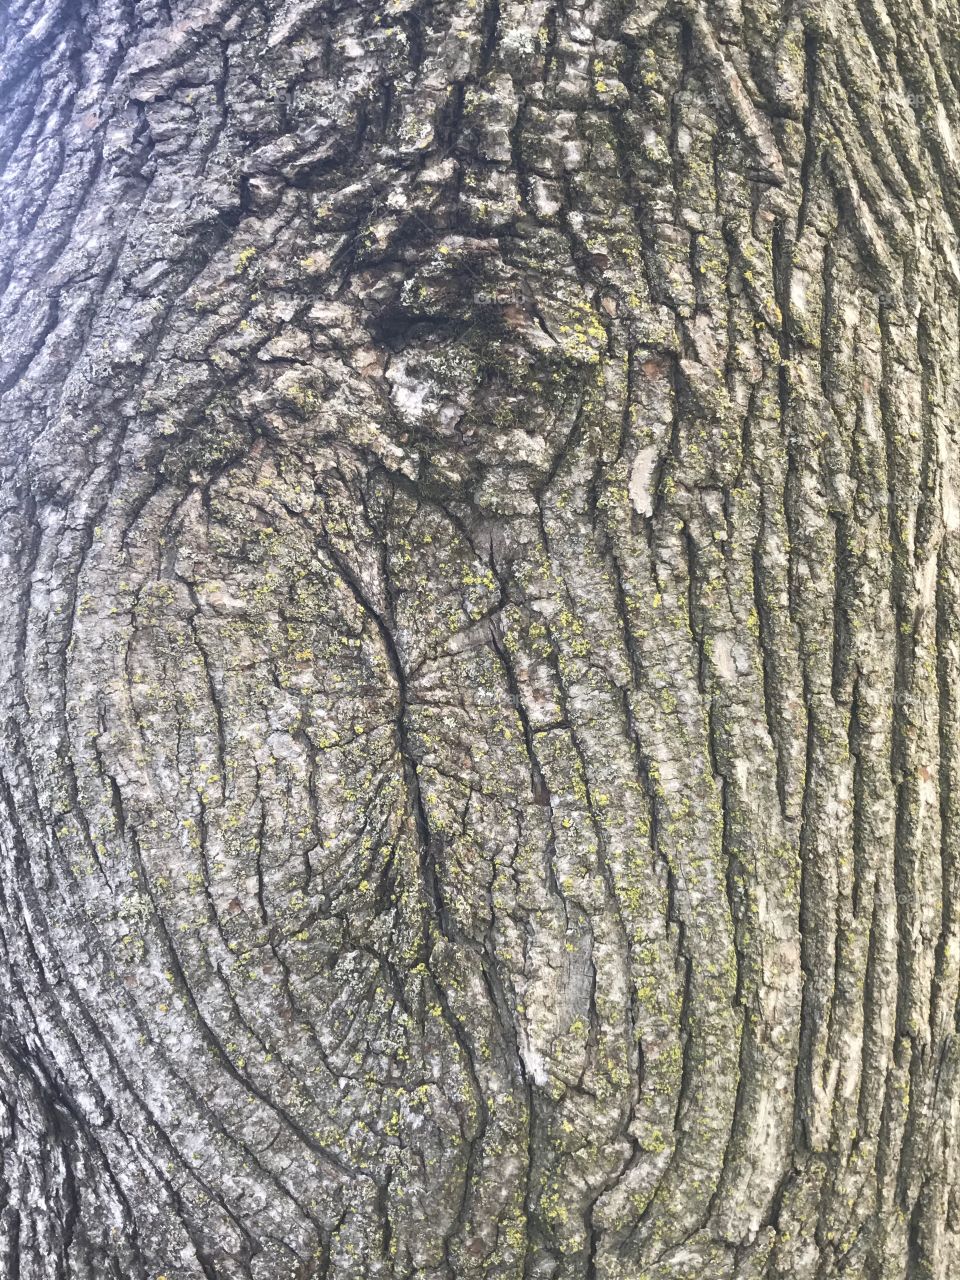 Tree Up Close